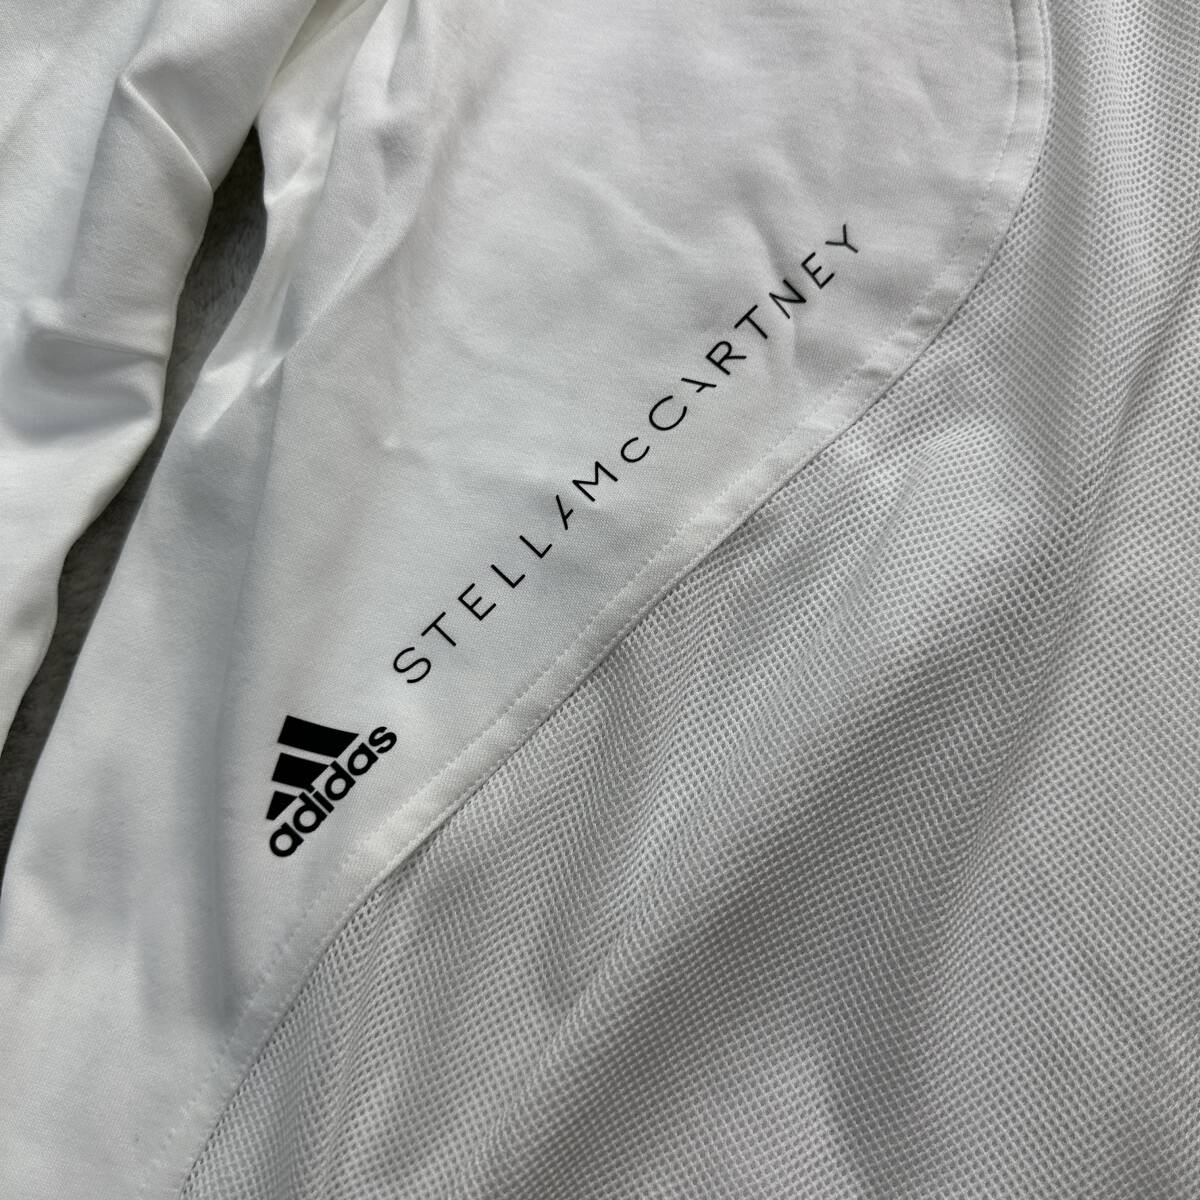  новый товар не использовался L размер adidas by Stella McCartney Adidas Stella McCartney long T футболка tops сетка сотрудничество белый 